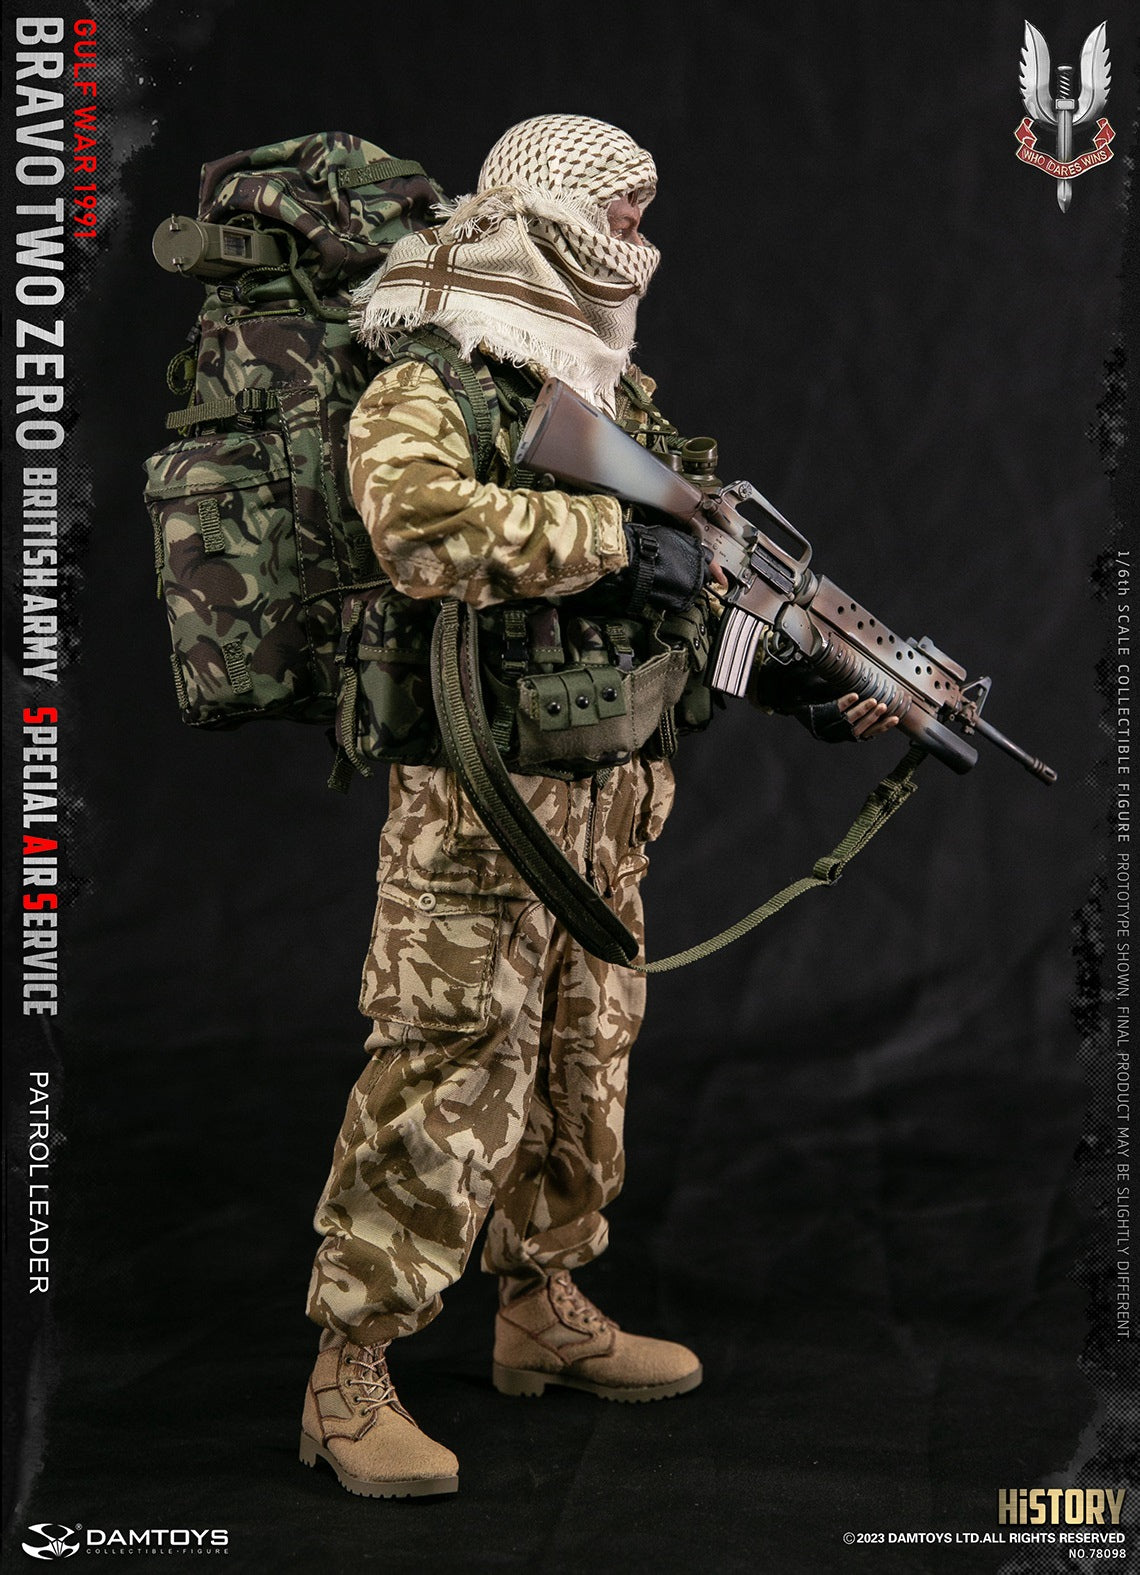 Damtoys - Elite Series 78098 - British Army Special Air Service (SAS) Patrol Leader "Bravo Two Zero" (1/6 Scale) - Marvelous Toys